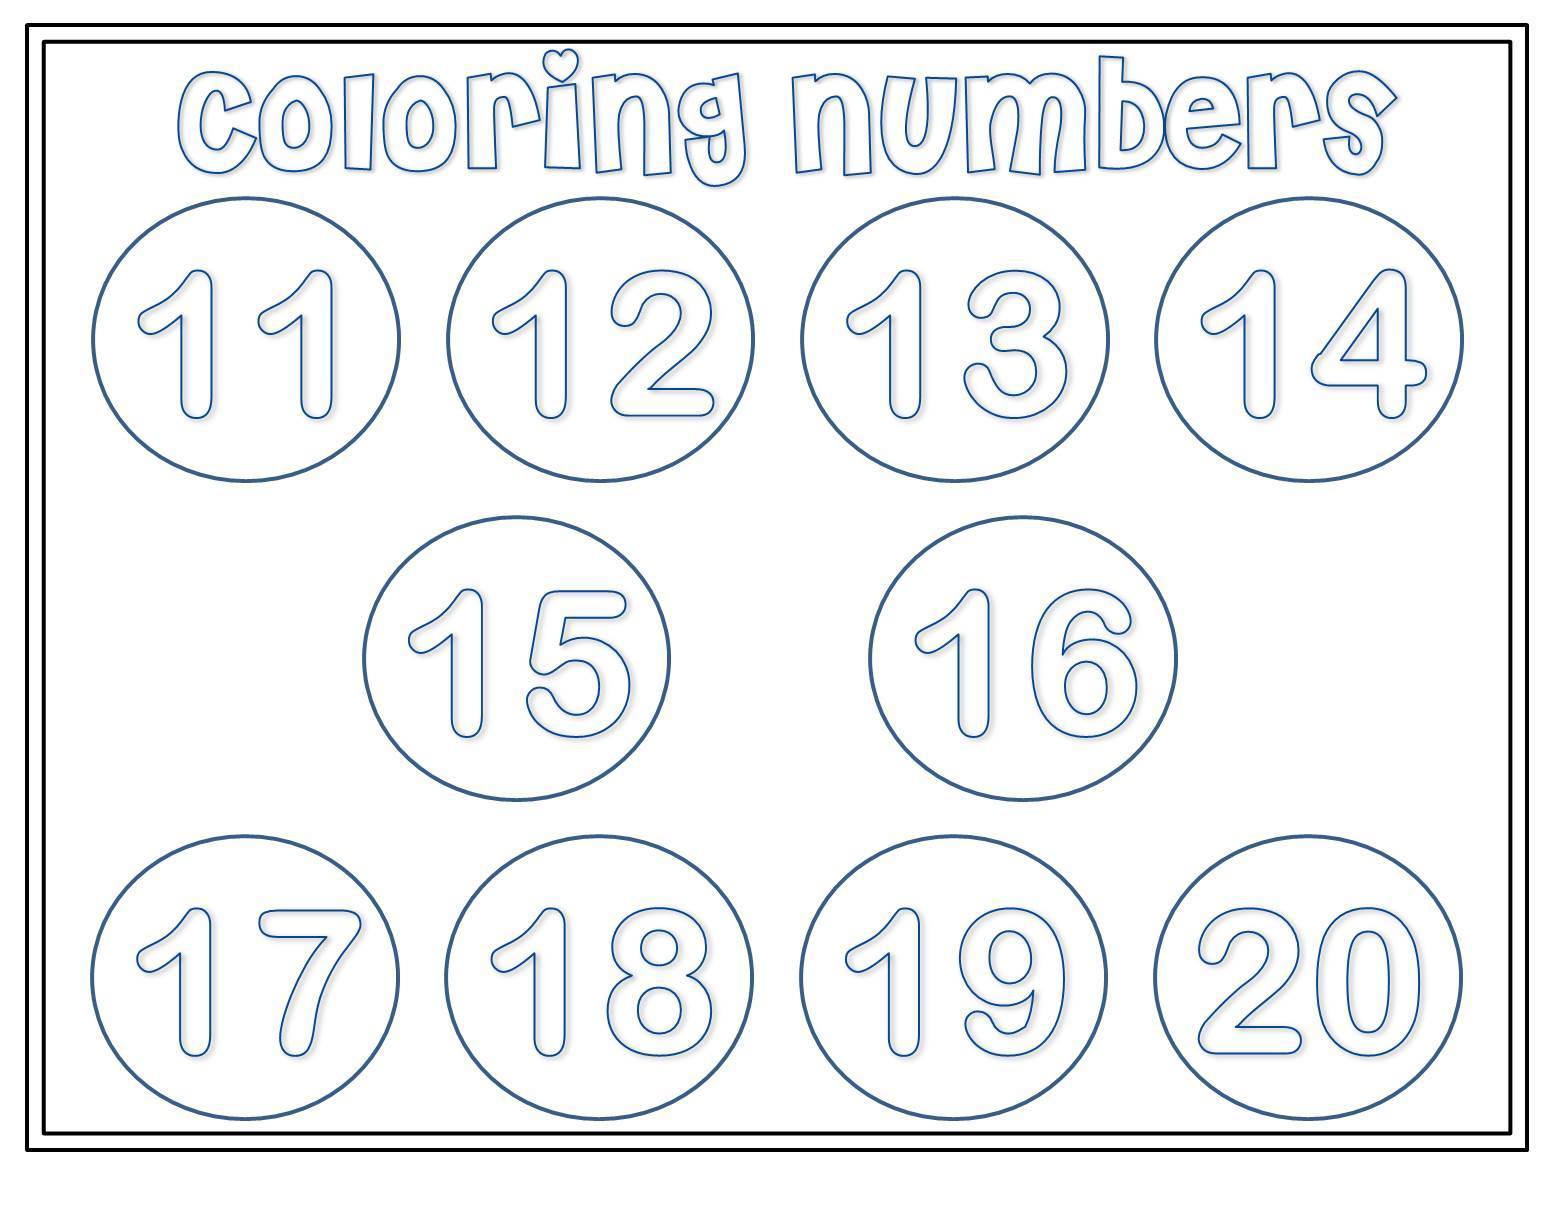 Aprendiendo numeros y colores